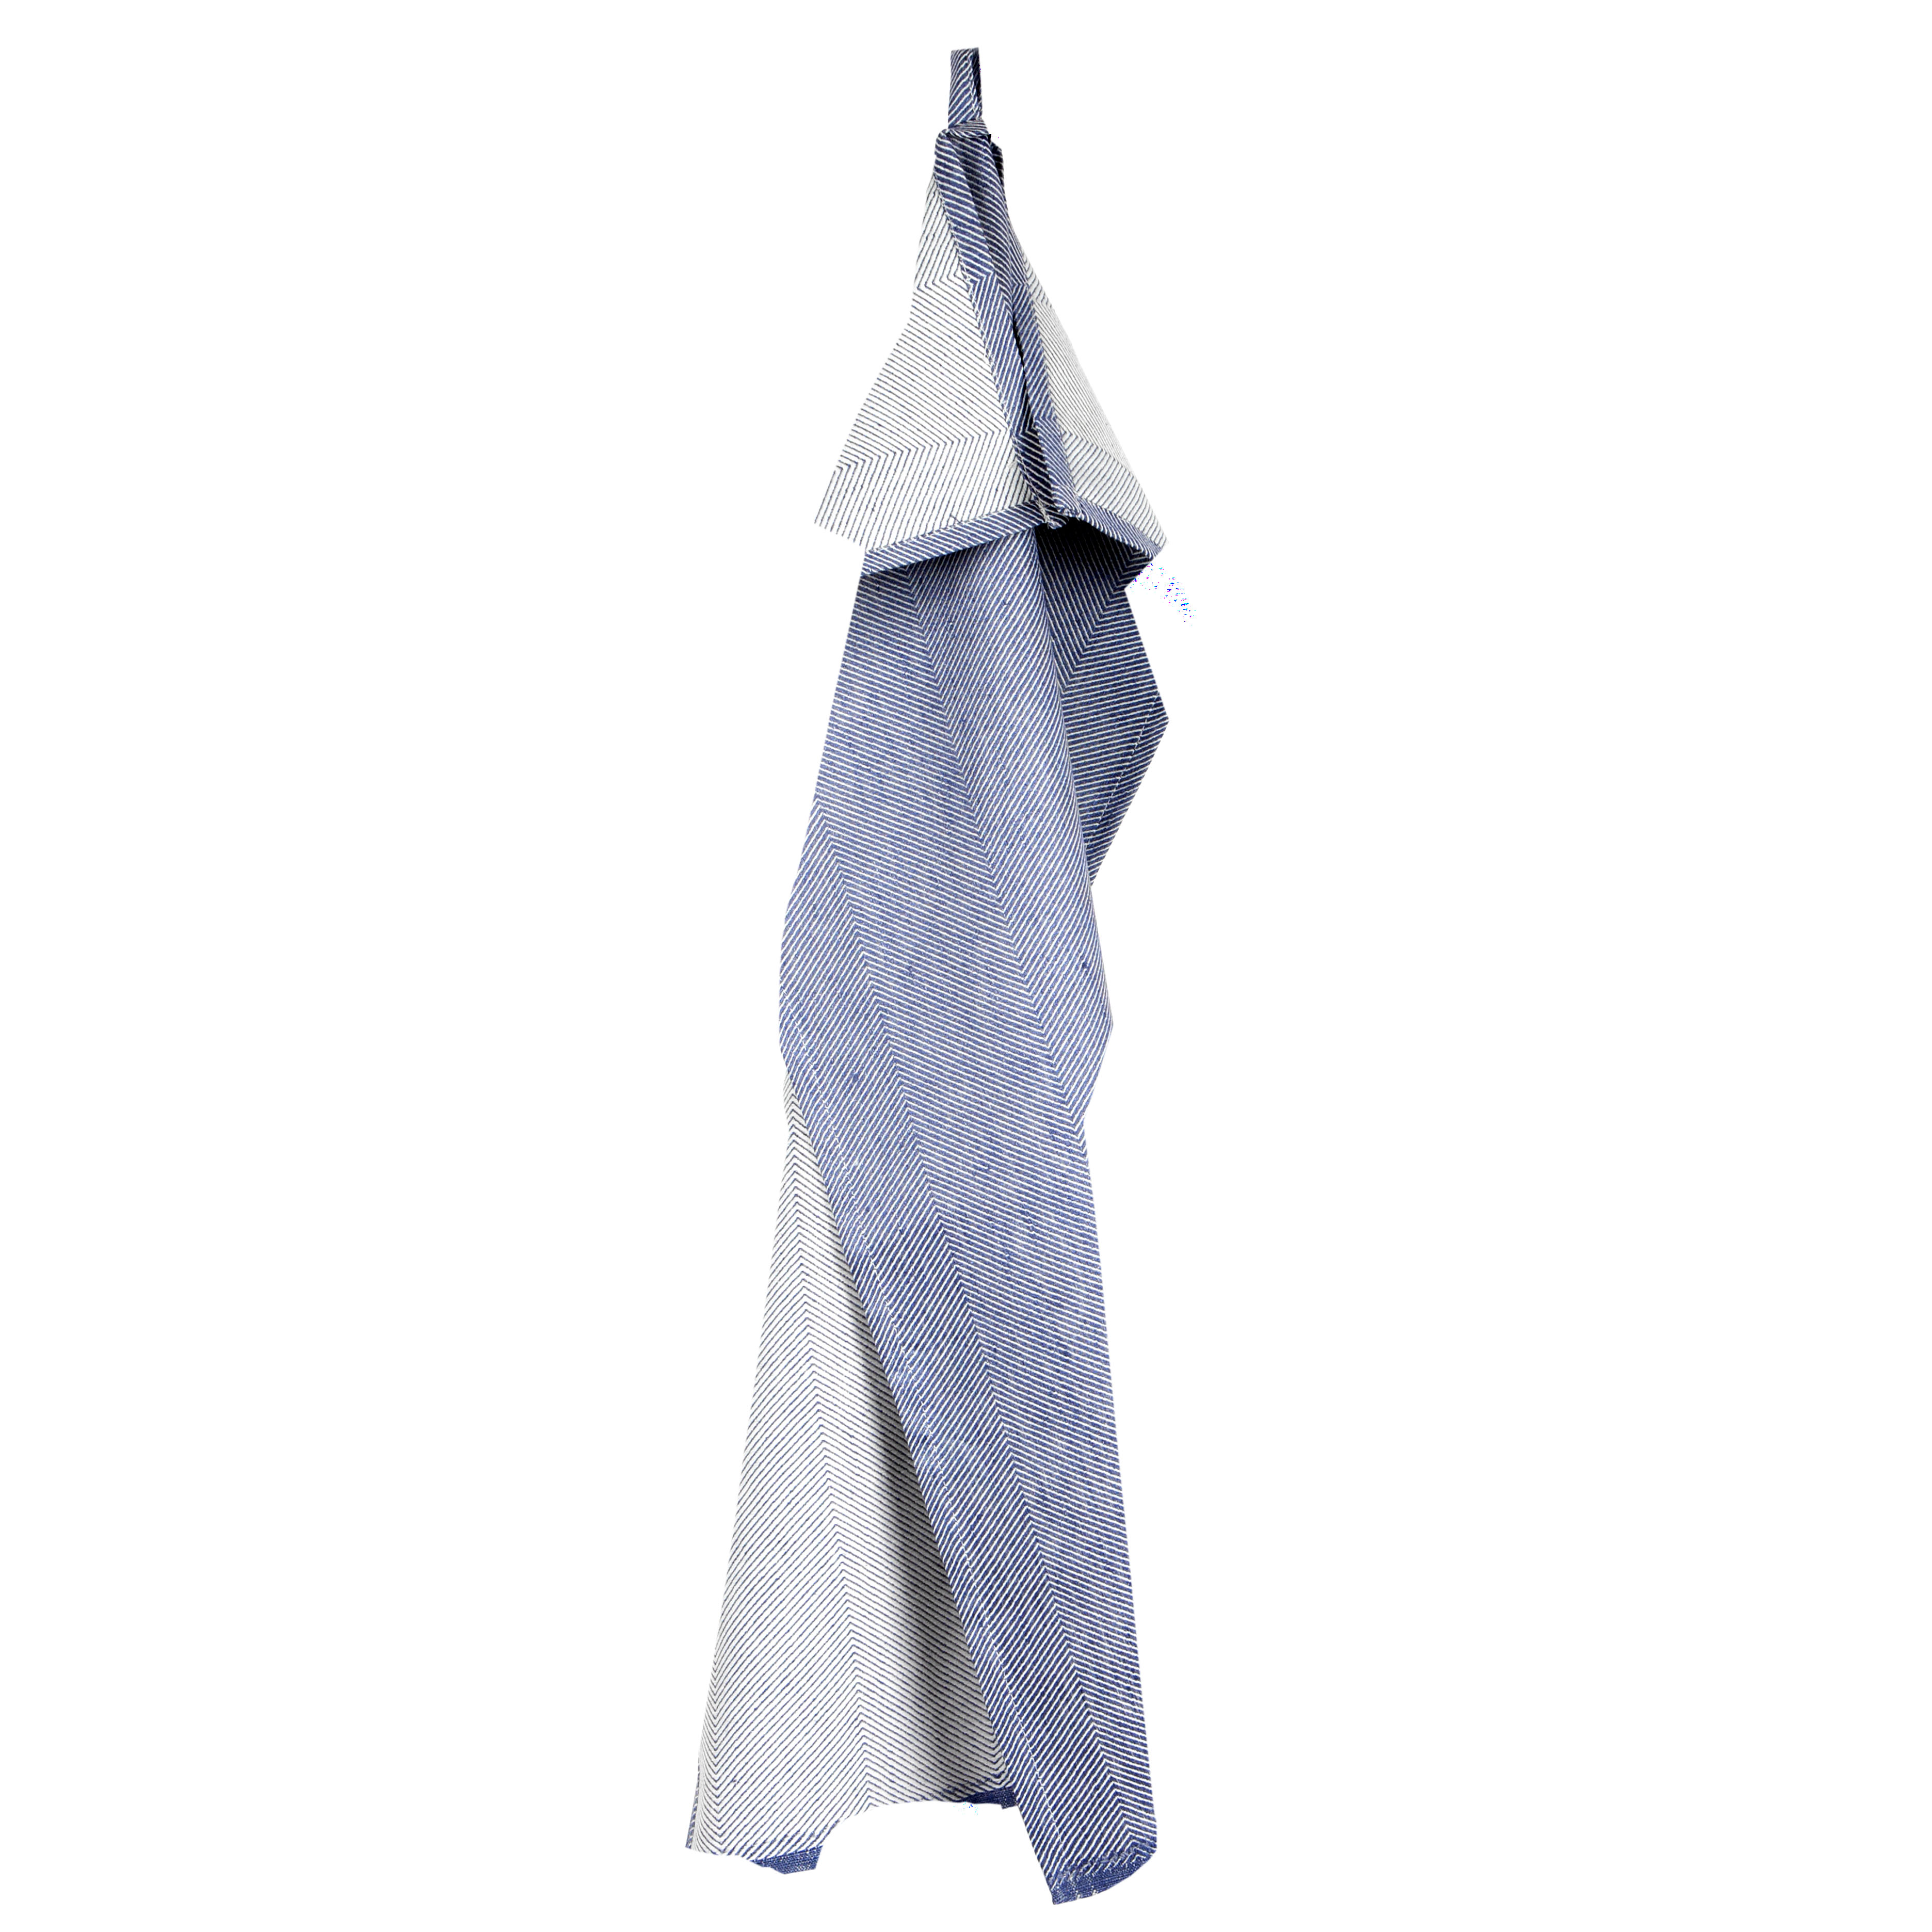 Tea towel, linen/cotton, indigo blue, design by Anne Rosenberg, RosenbergCph